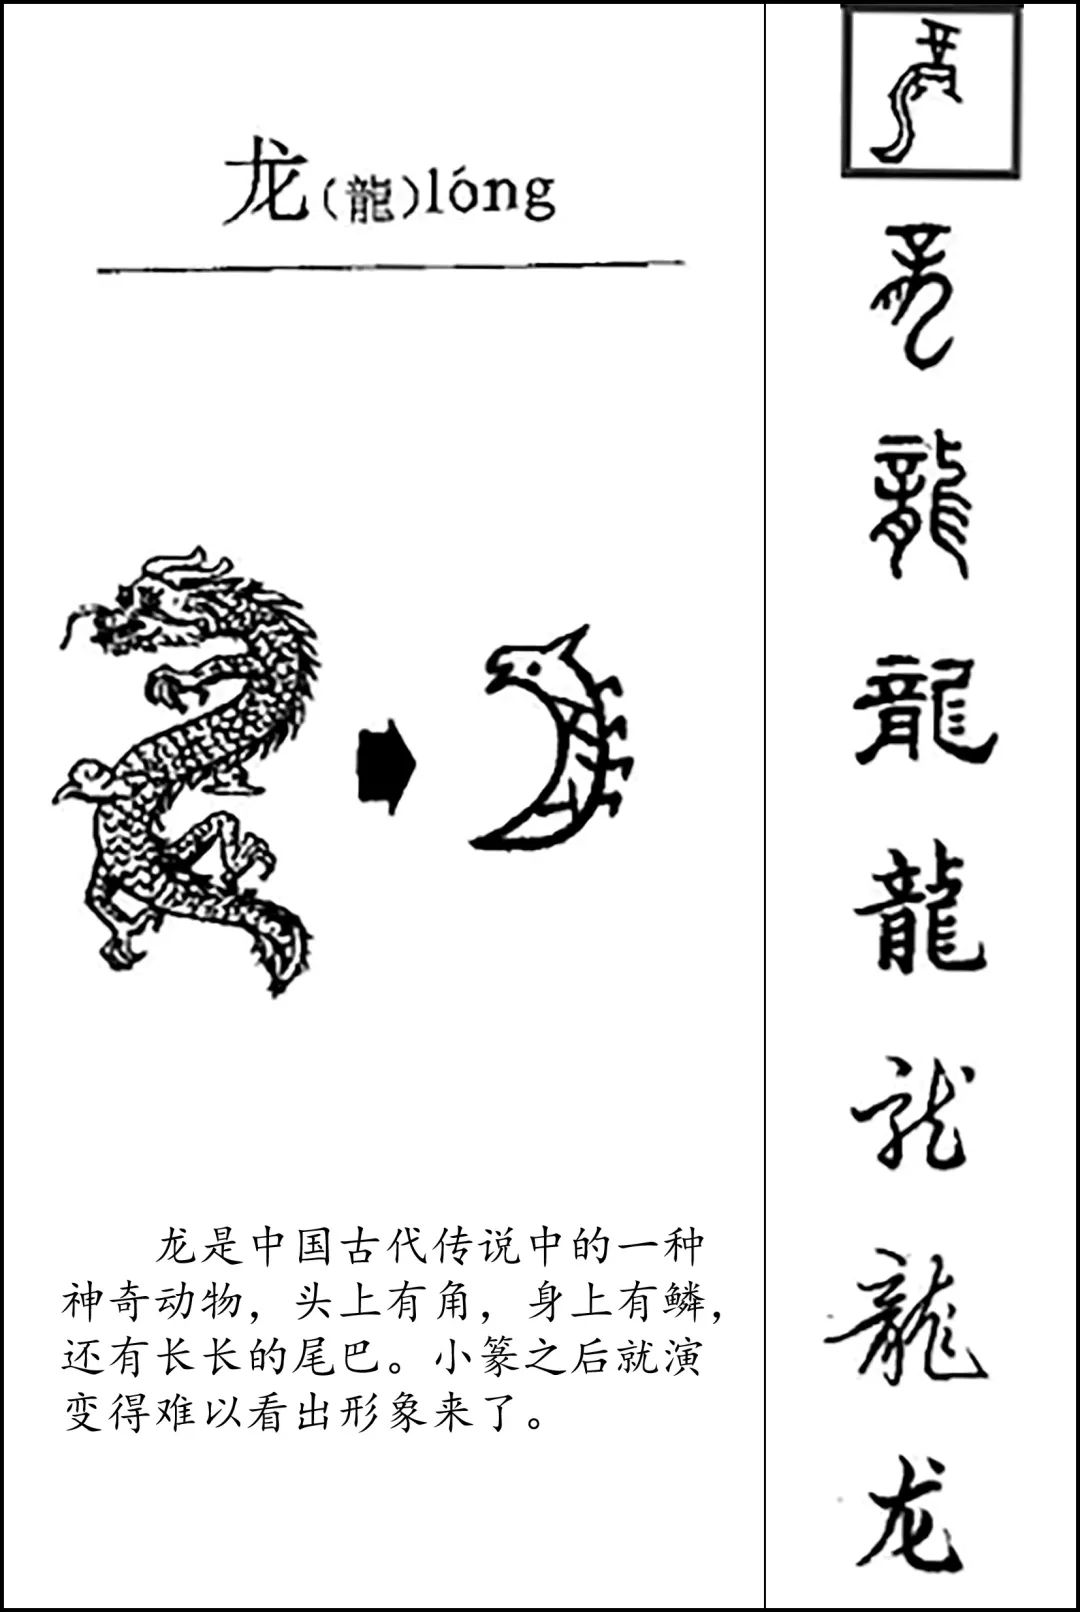 中国古代字体演变过程图片